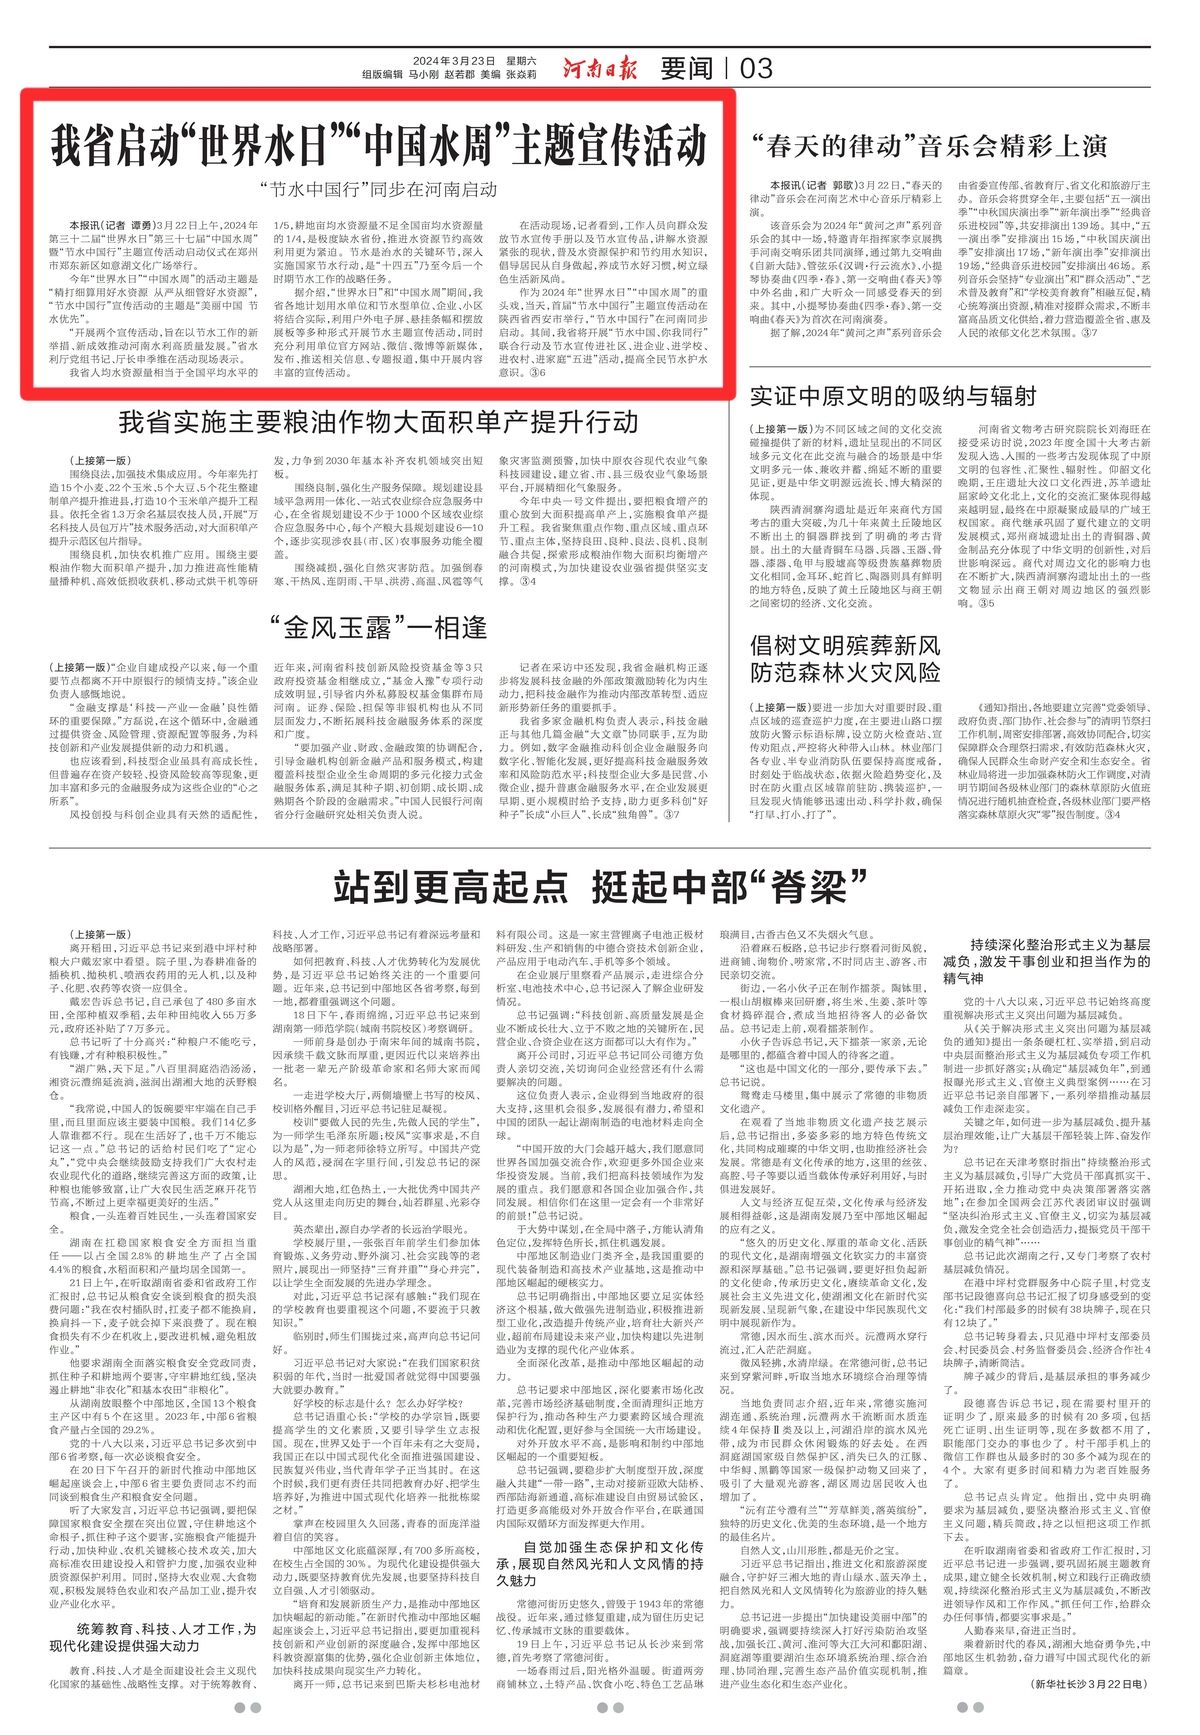 河南日报：我省启动“世界水日”“中国水周”主题宣传活动  “节水中国行”同步在河南启动